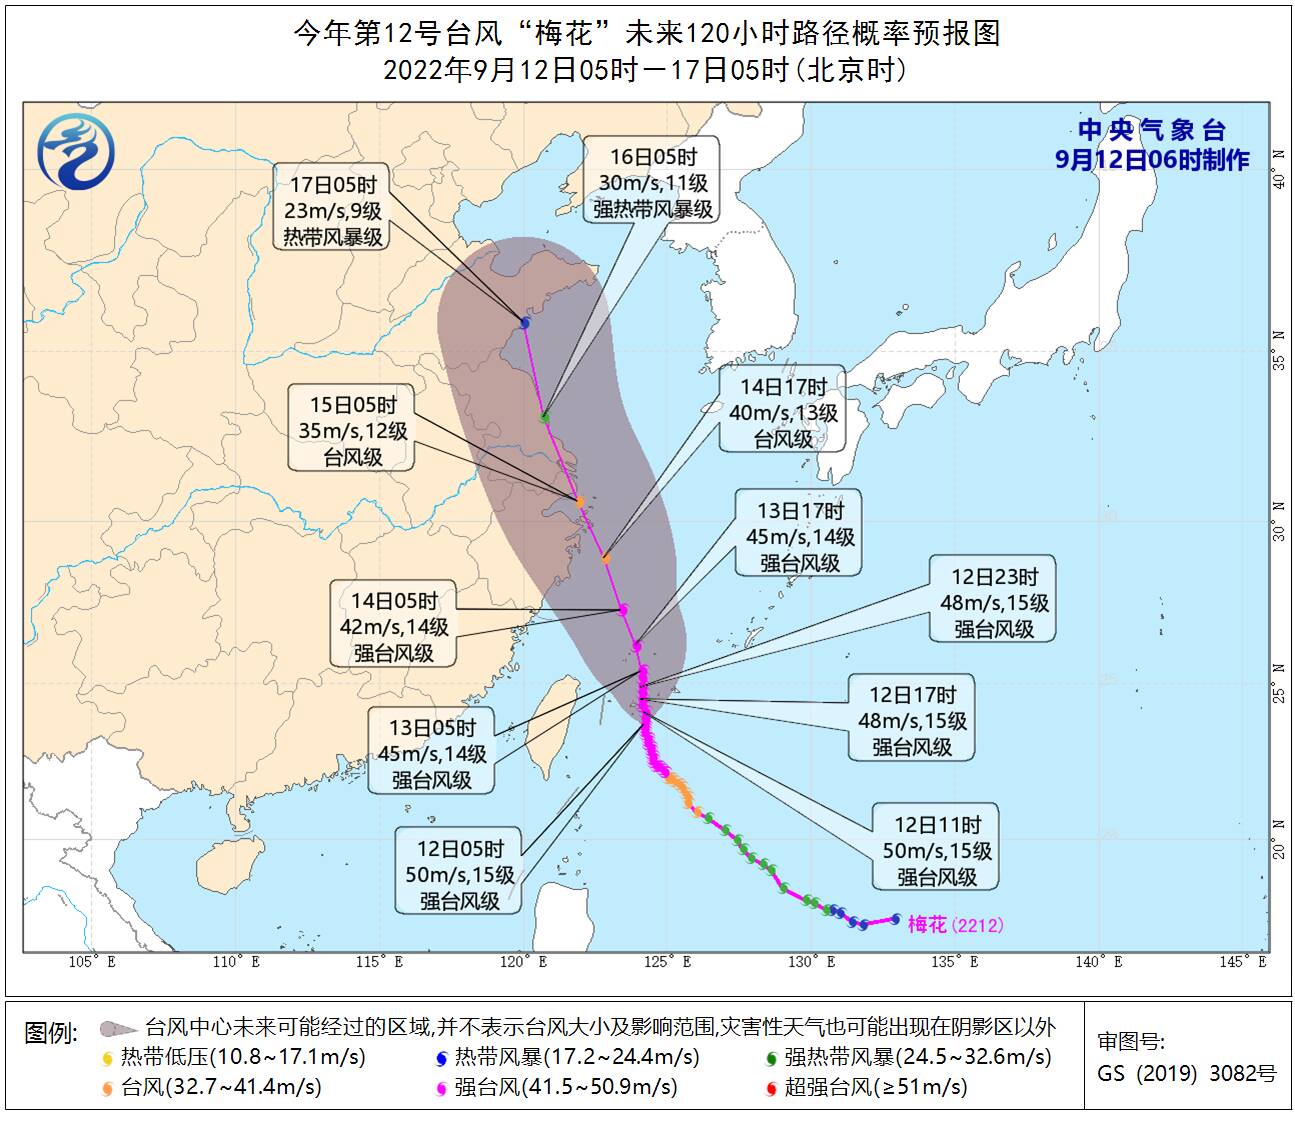 强台风“梅花”不断靠近 山东东部将出现暴雨或大暴雨 附近海域最大风力9级